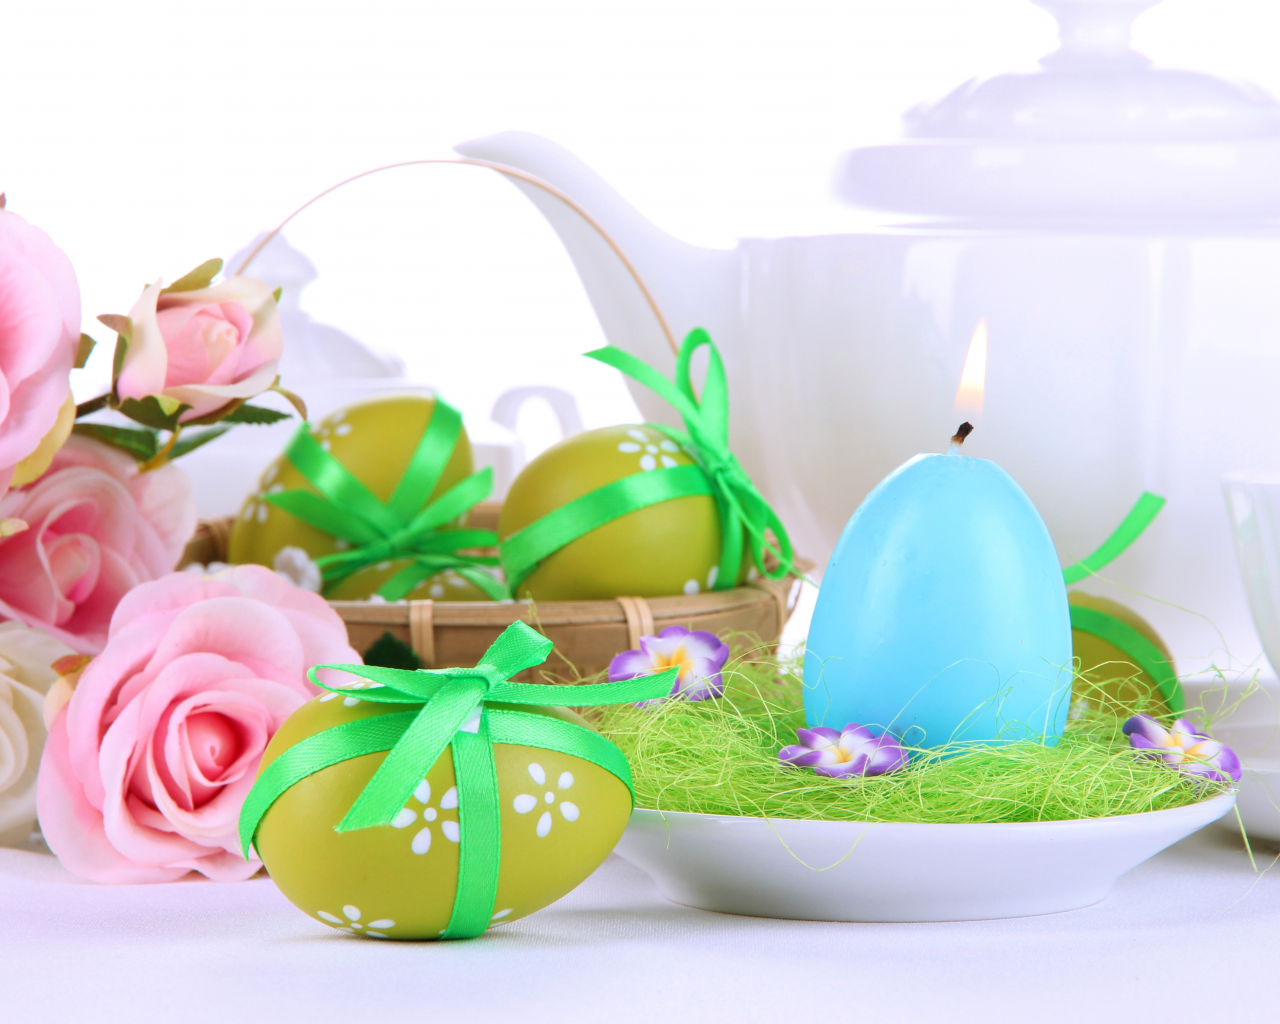 праздник, яйца, чайник, пасхальные, свеча, весна, Пасха